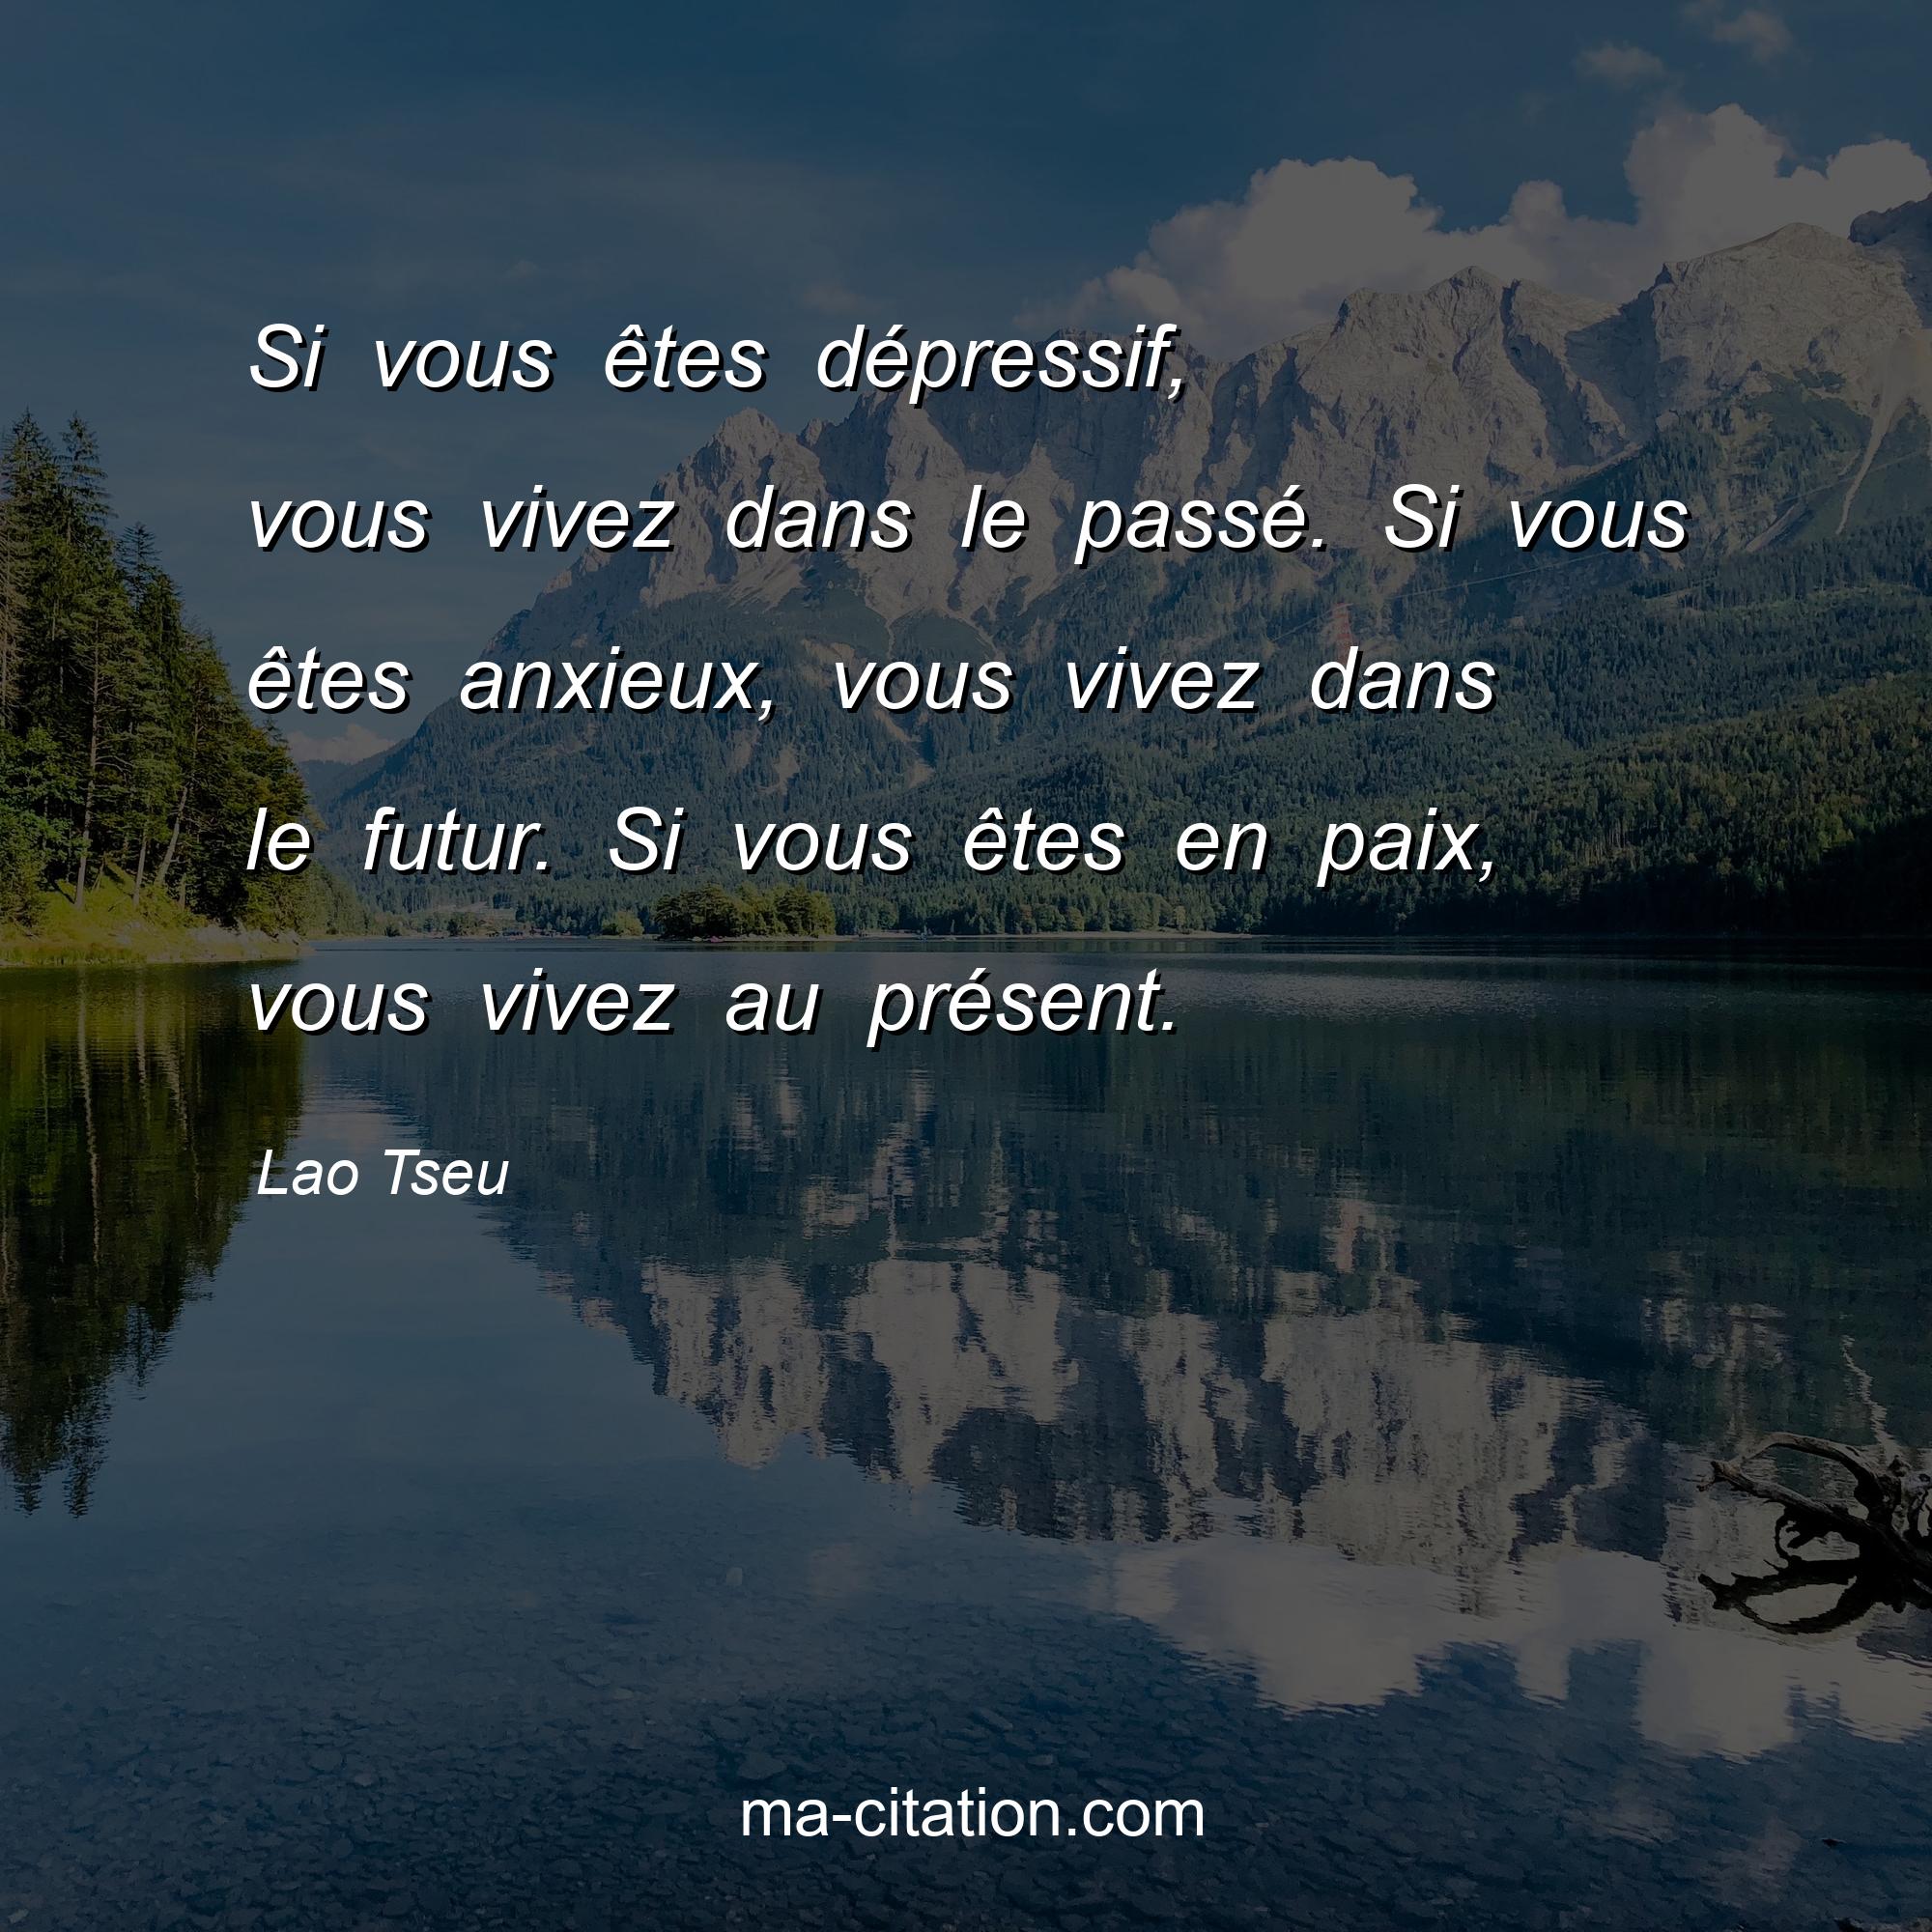 Lao Tseu : Si vous êtes dépressif, vous vivez dans le passé. Si vous êtes anxieux, vous vivez dans le futur. Si vous êtes en paix, vous vivez au présent.